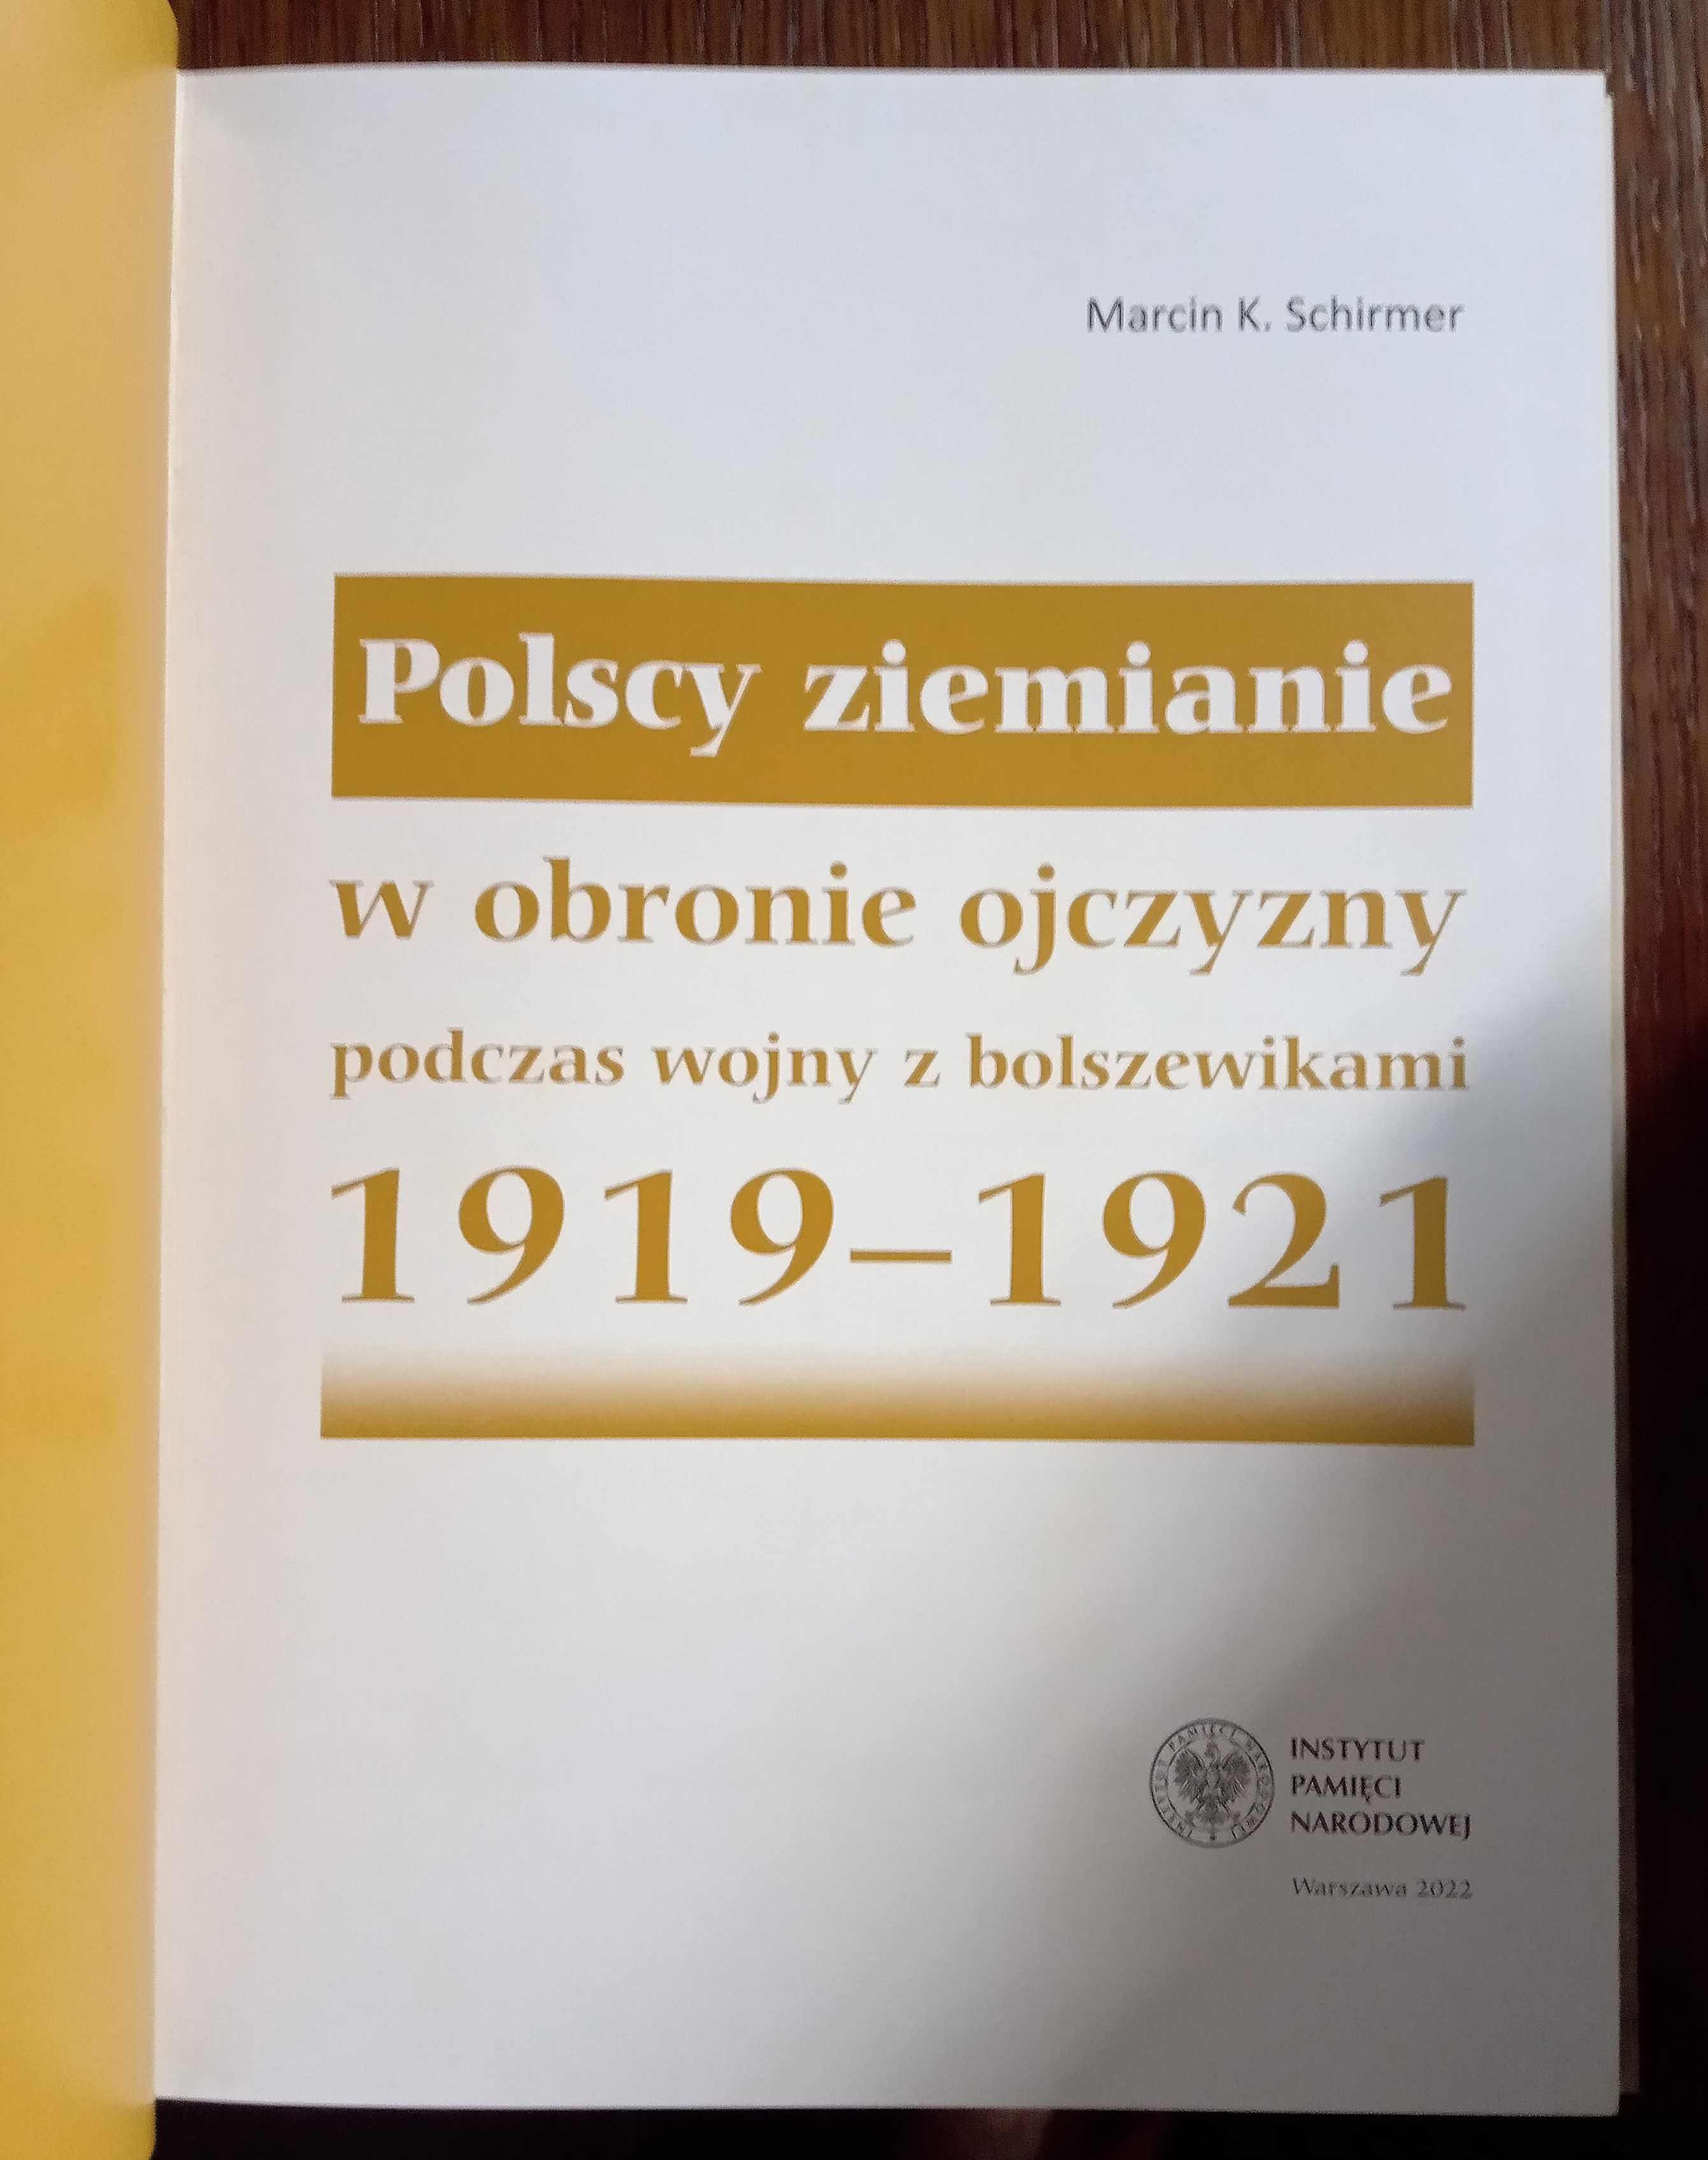 Polscy ziemianie w obronie ojczyzny podczas wojny z bolszewikami